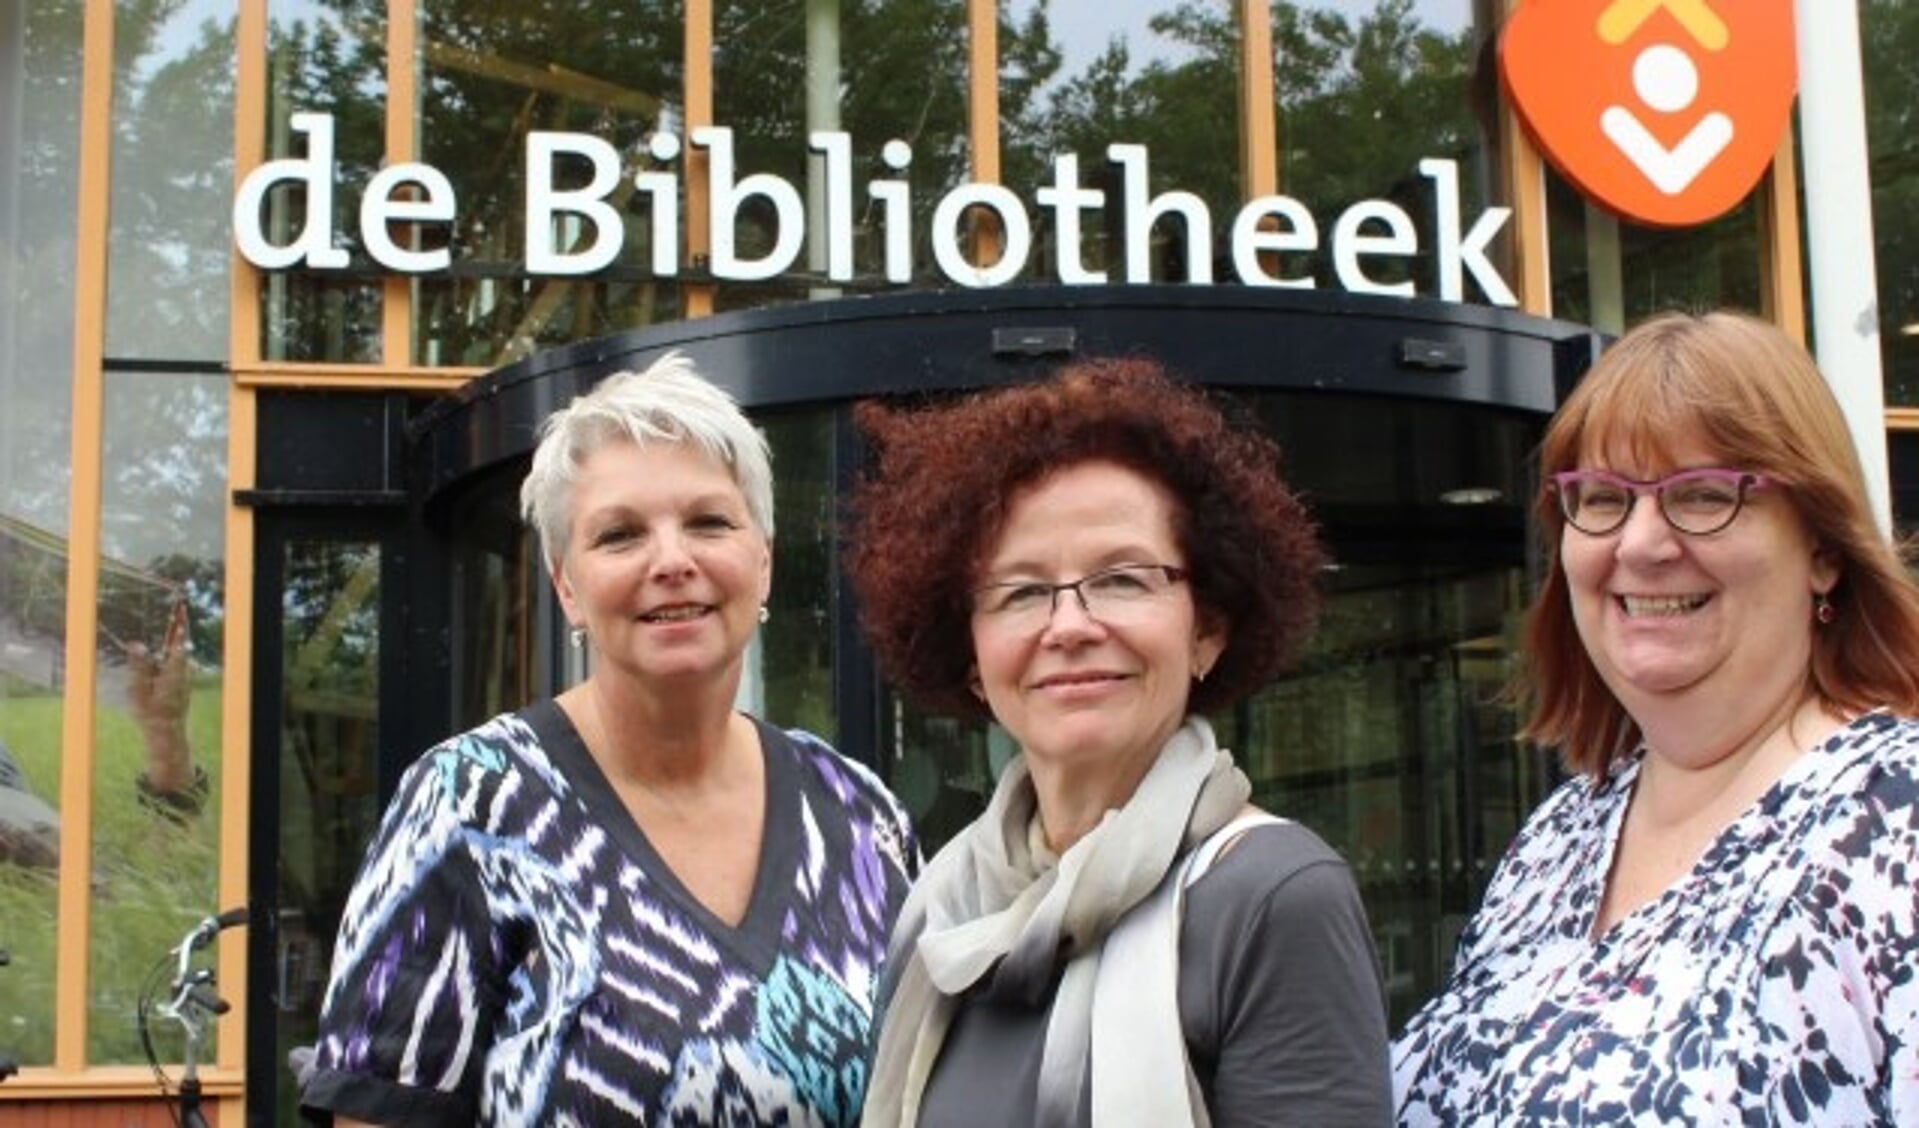 Annemarie Doesburg, Lucie Janssen en Marianne van Schaik werken met collega's en vrijwilligers aan de bibliotheek als huiskamer van de stad. (Foto: Lysette Verwegen)